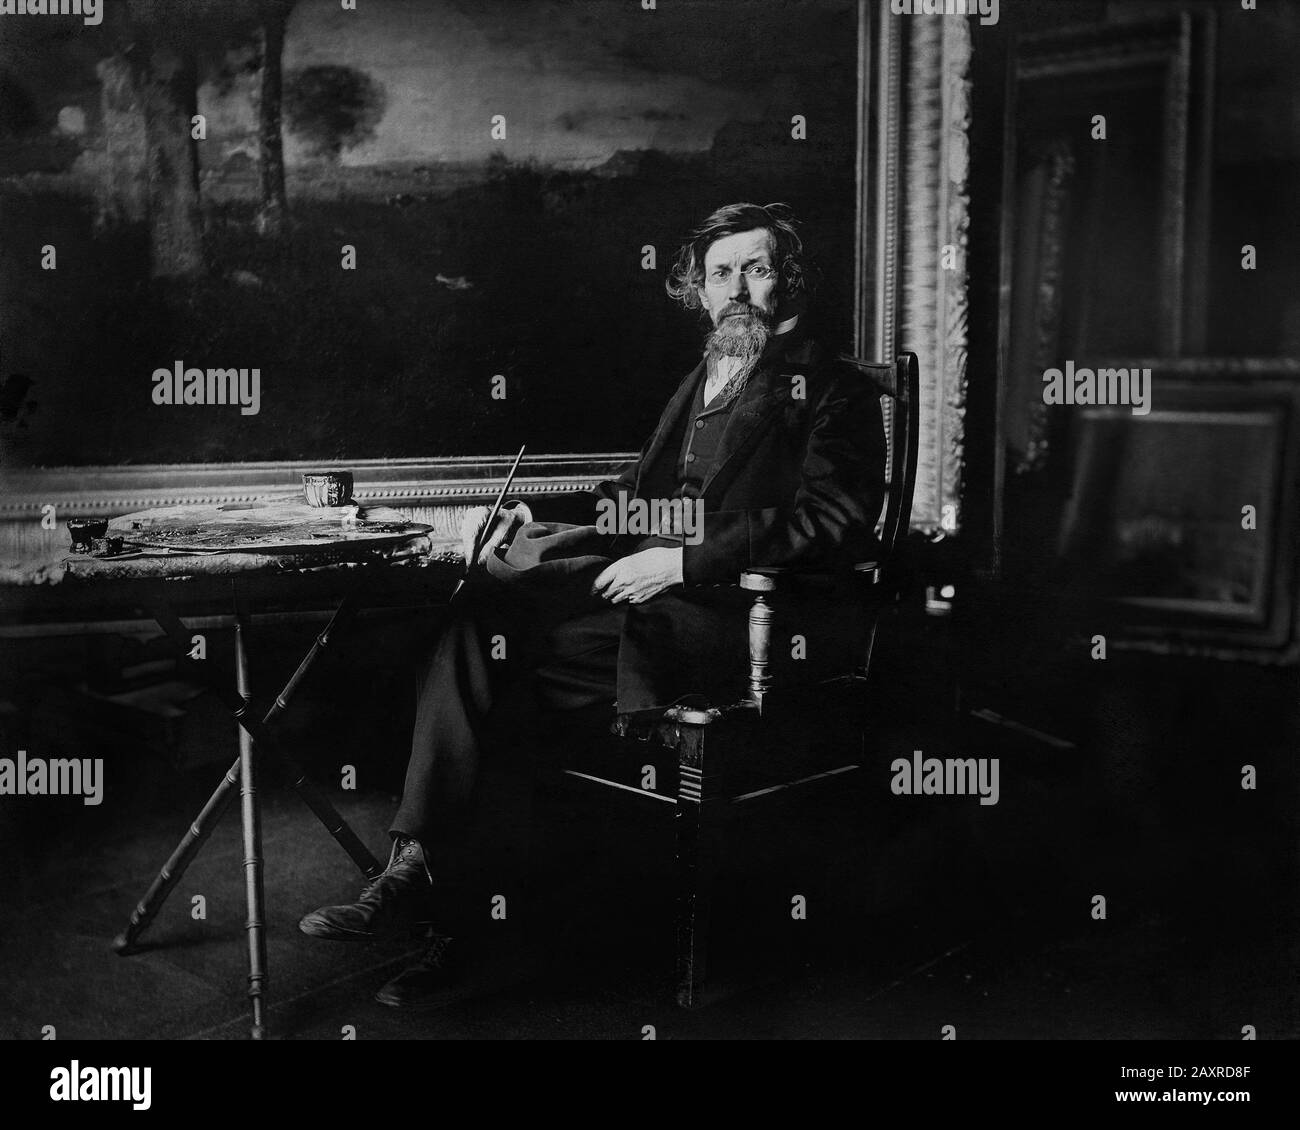 1880 ca , USA : The american painter GEORGE INNESS ( 1825 - 1894 ) in atelier . Photo by E. S. Bennett - ARTS - ARTI VISIVE - ARTE - Francia - PORTRAIT - RITRATTO - HISTORY - FOTO STORICHE - beard - barba - tavolozza - palette  --- Archivio GBB Stock Photo